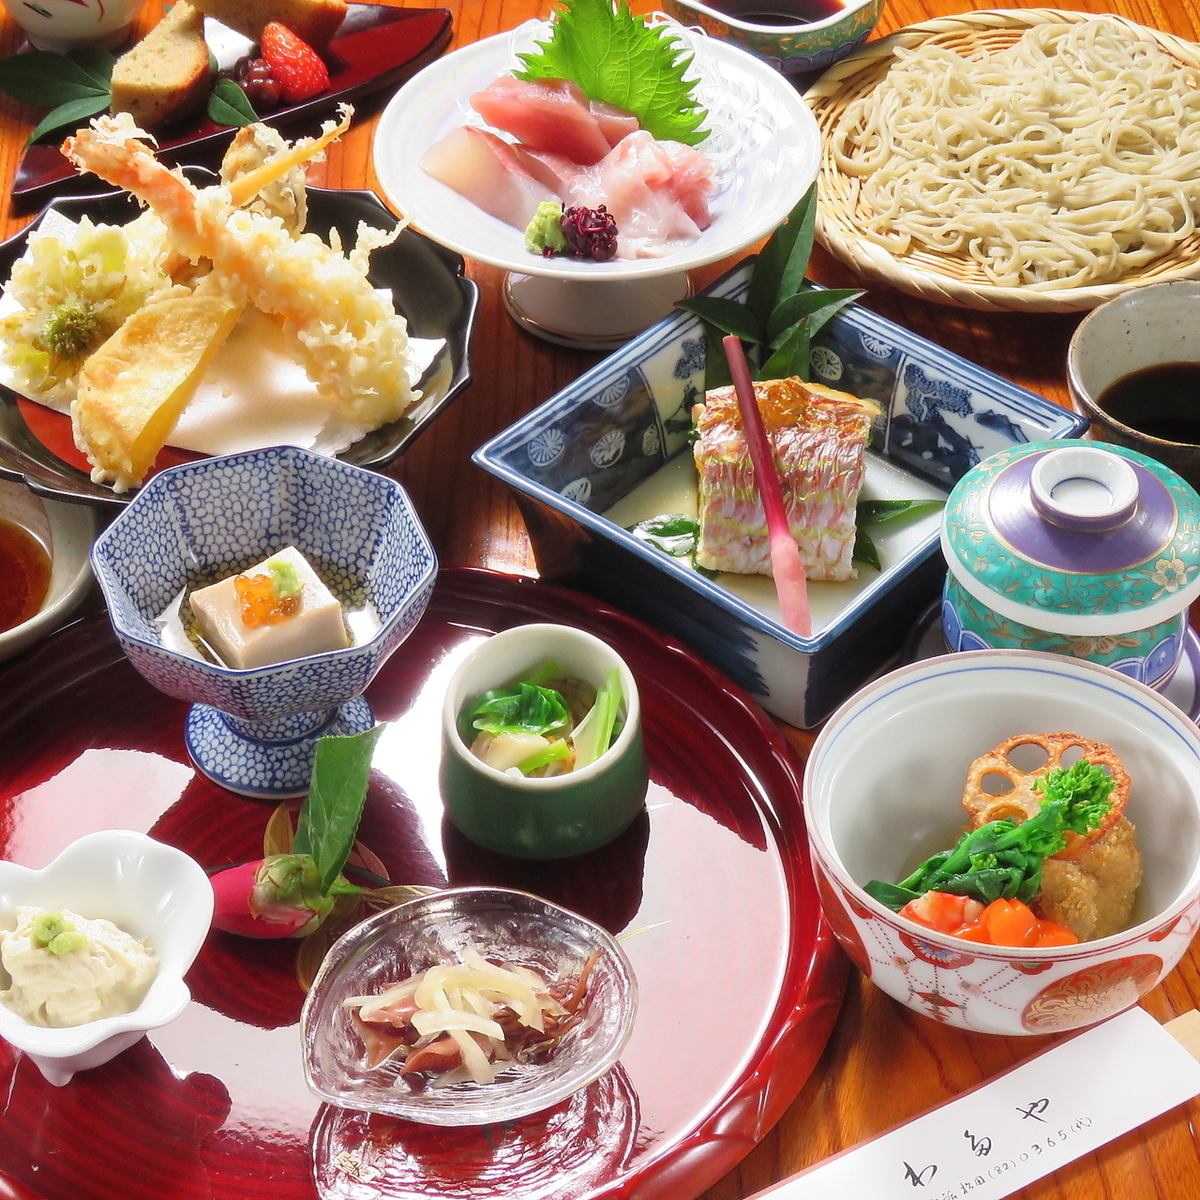 日式餐厅氛围很好，非常适合与家人朋友聚餐。